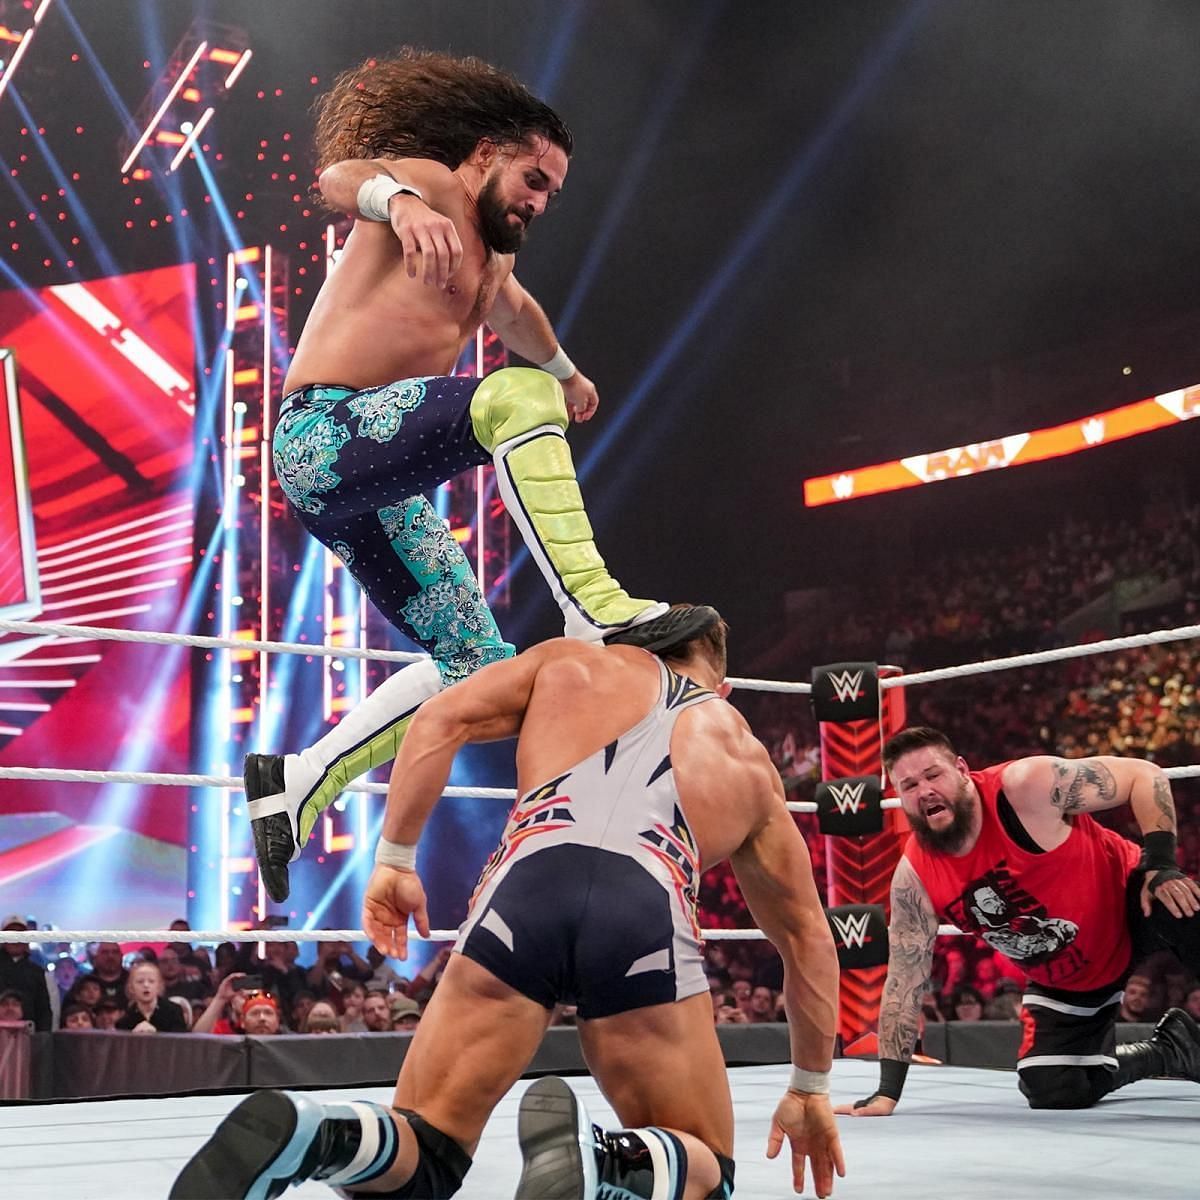 WWE सुपरस्टार सैथ रॉलिंस ने स्टॉम्प देते हुए अपनी टीम को चैंपियंस के खिलाफ जीत दिलाई 